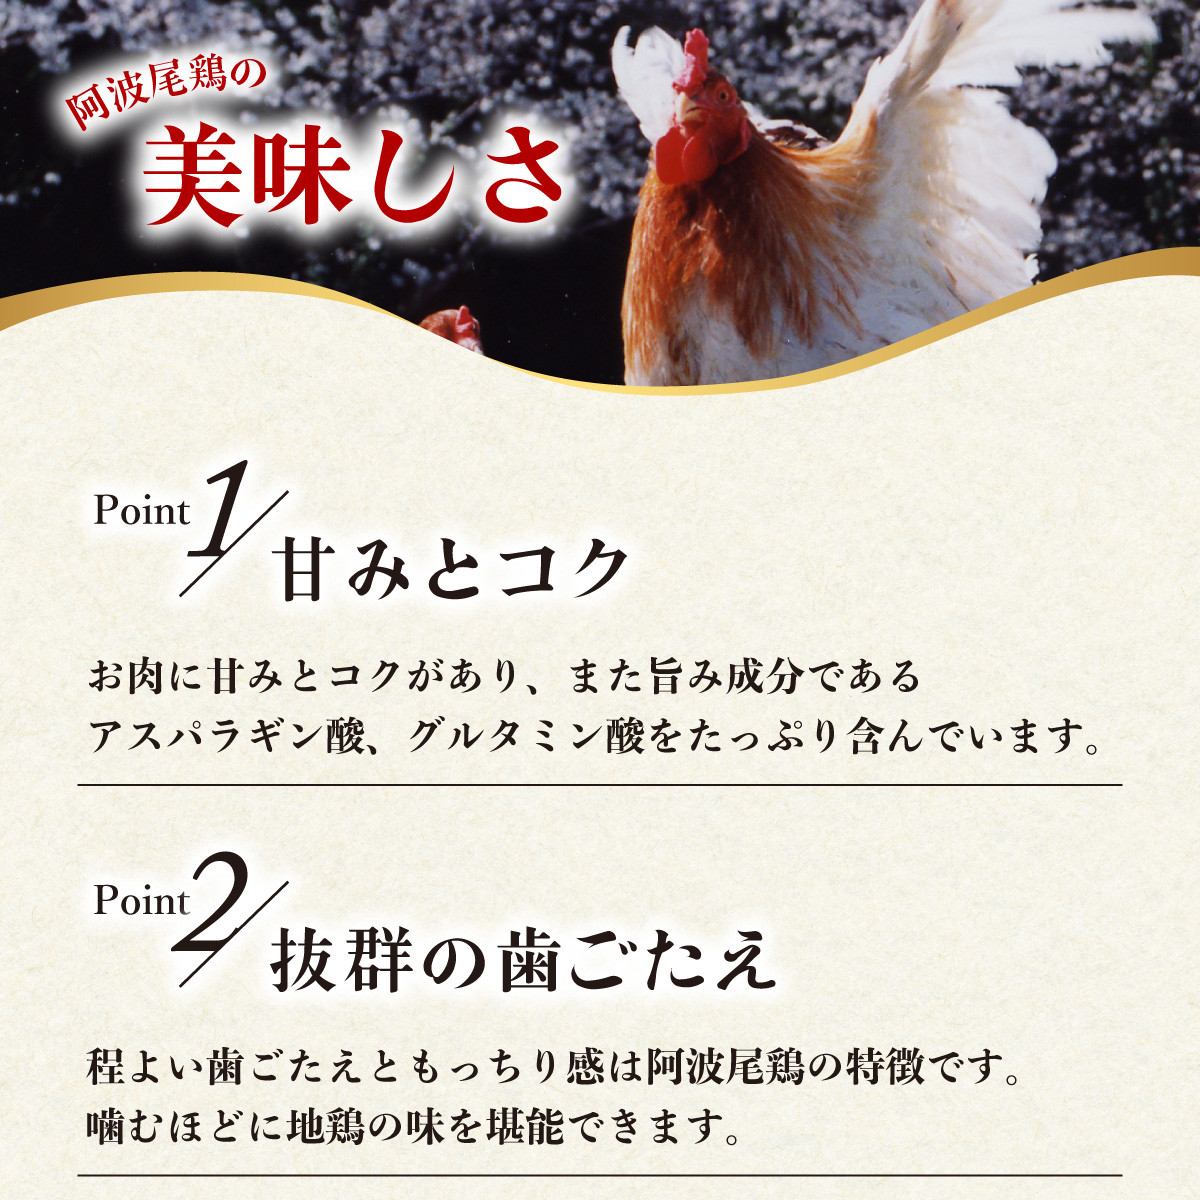 【阿波尾鶏バラ凍結定期便 6か月連続】阿波尾鶏 もも肉 切り身 バラ凍結 3kg×6回 計18kg 鶏肉 鶏もも 阿波尾鶏 冷凍 地鶏